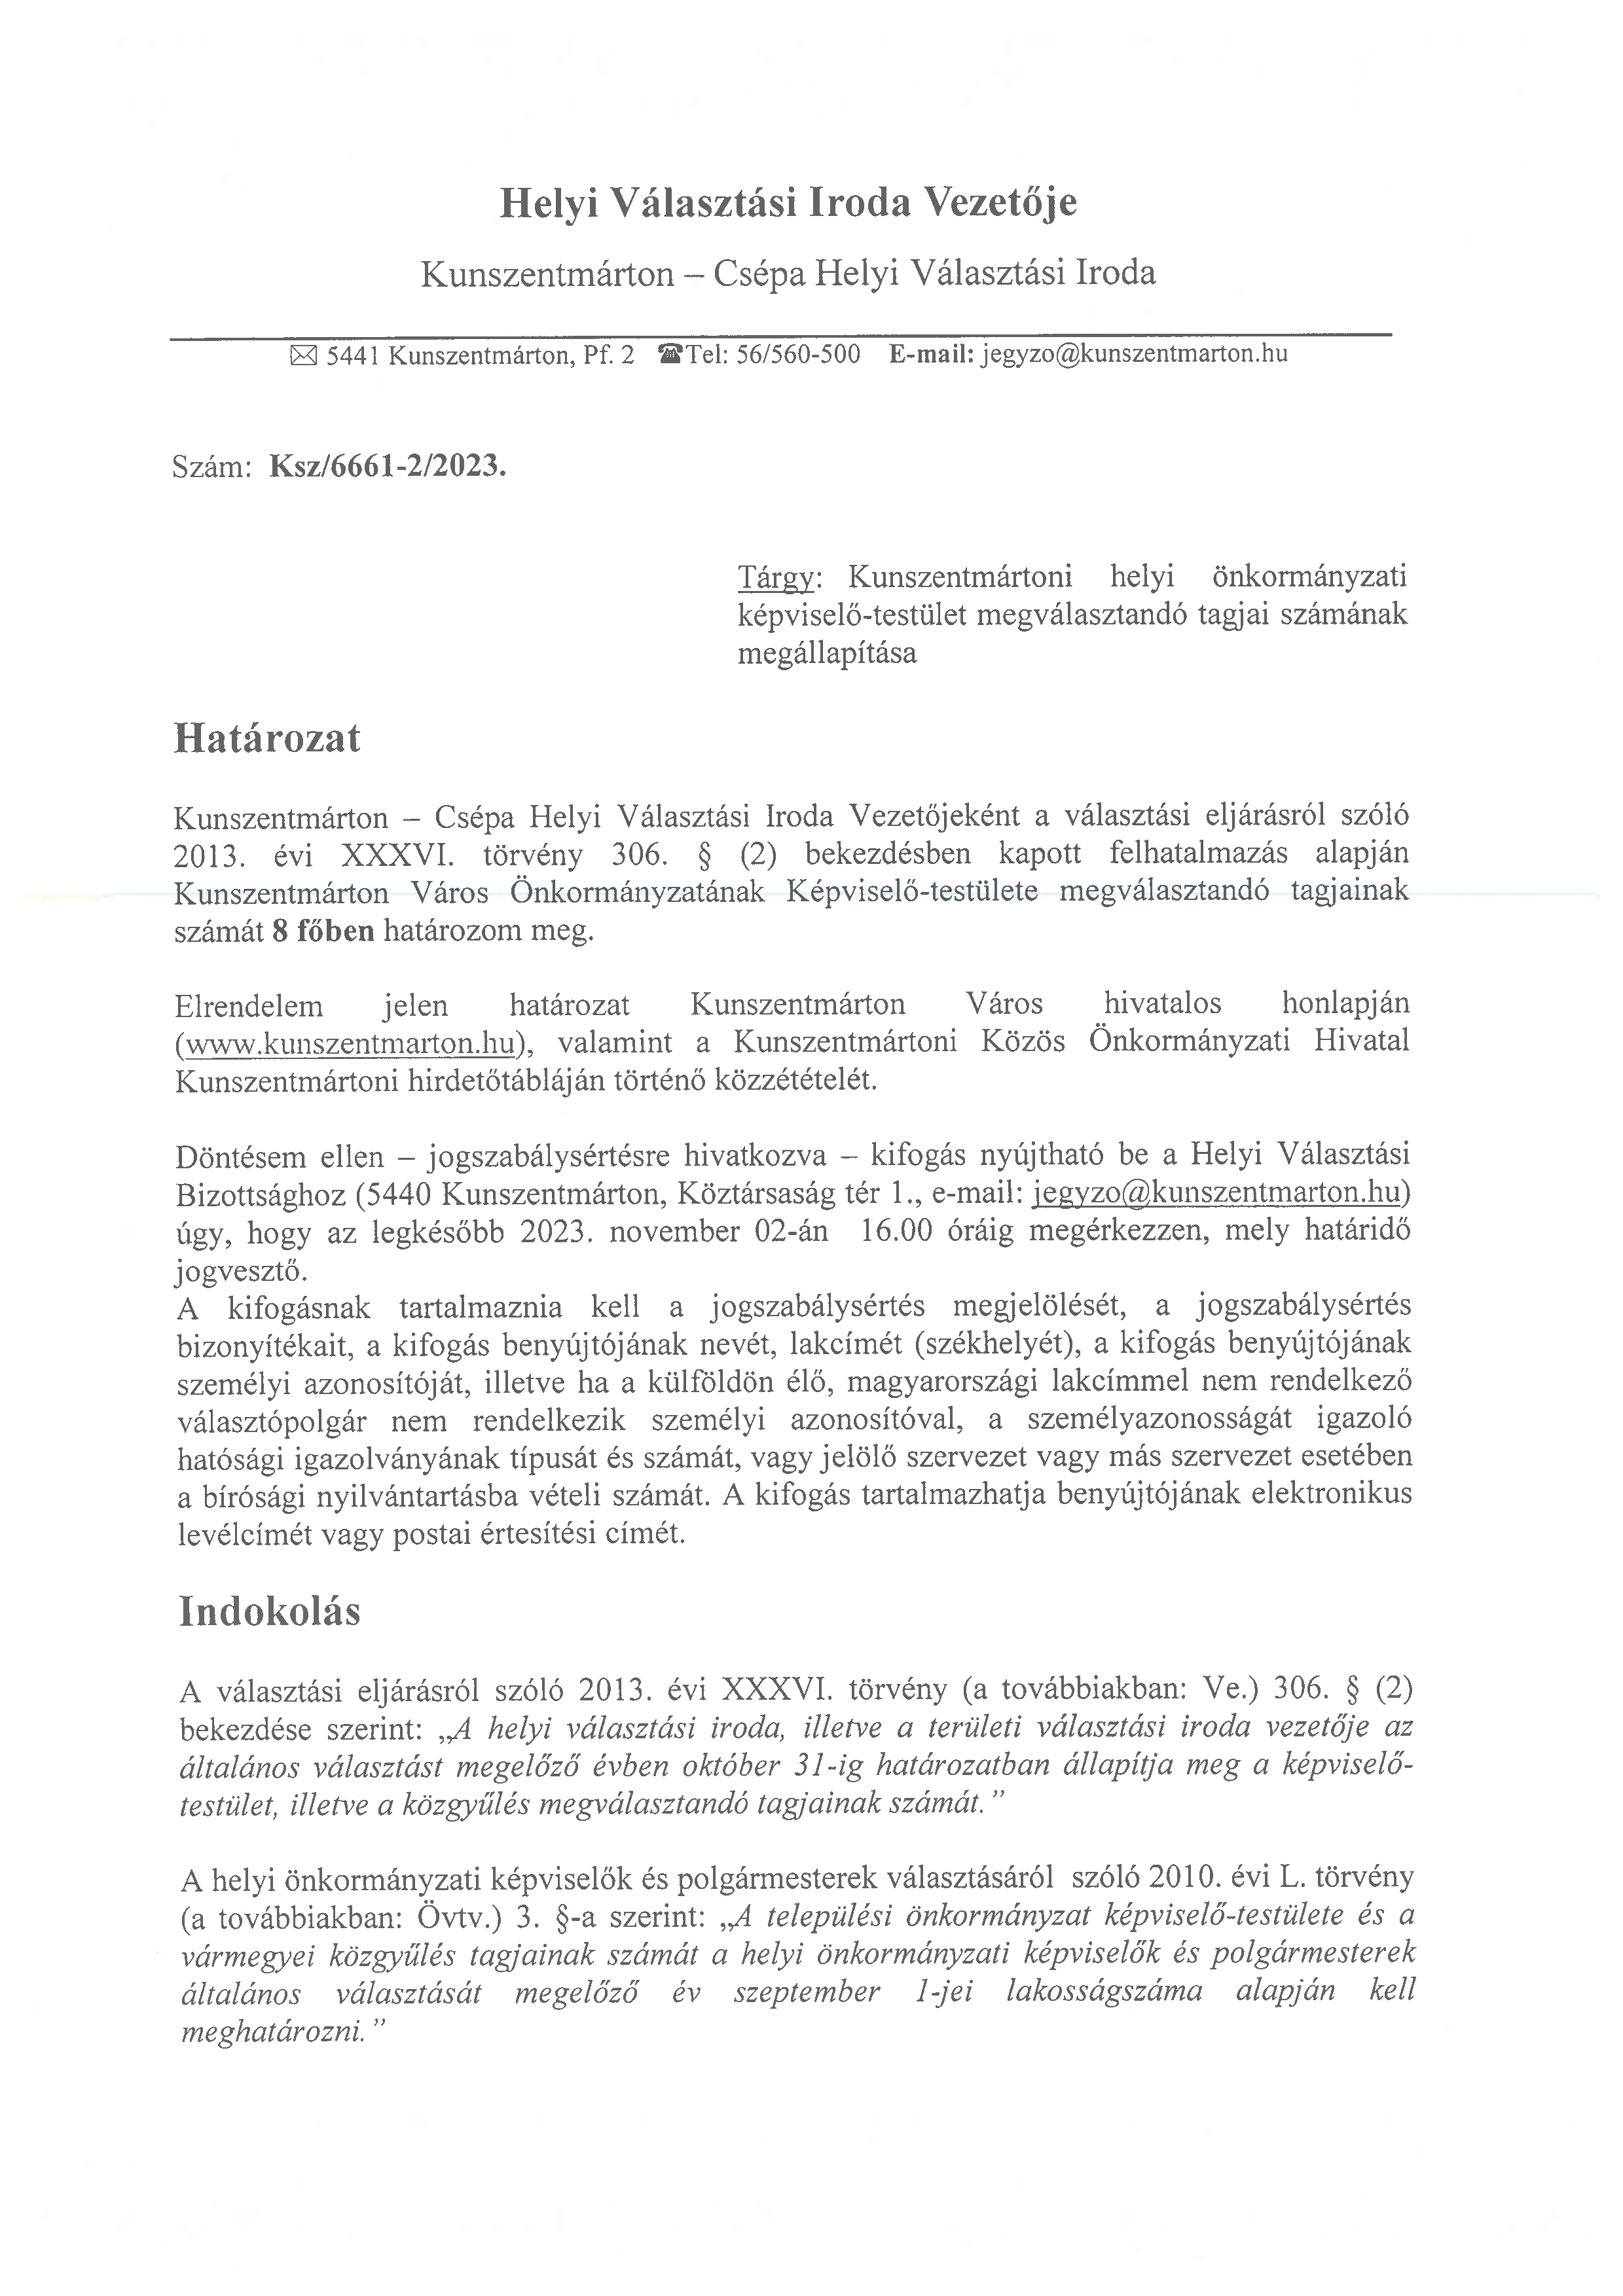 Határozat  a kunszentmártoni helyi önkormányzati képviselő-testület megválasztandó tagjai számának megállapításáról